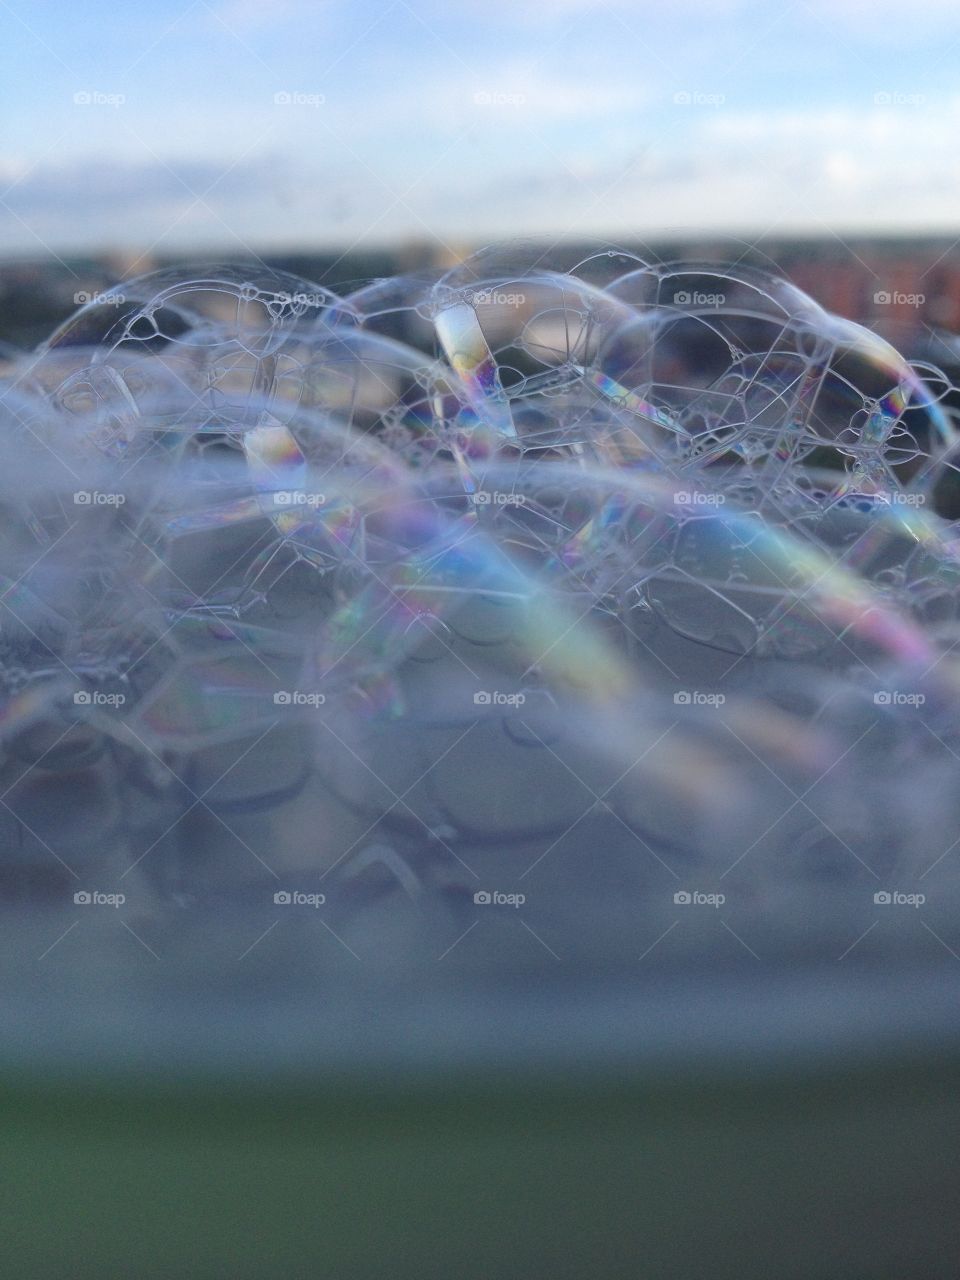 Bubbles of future
